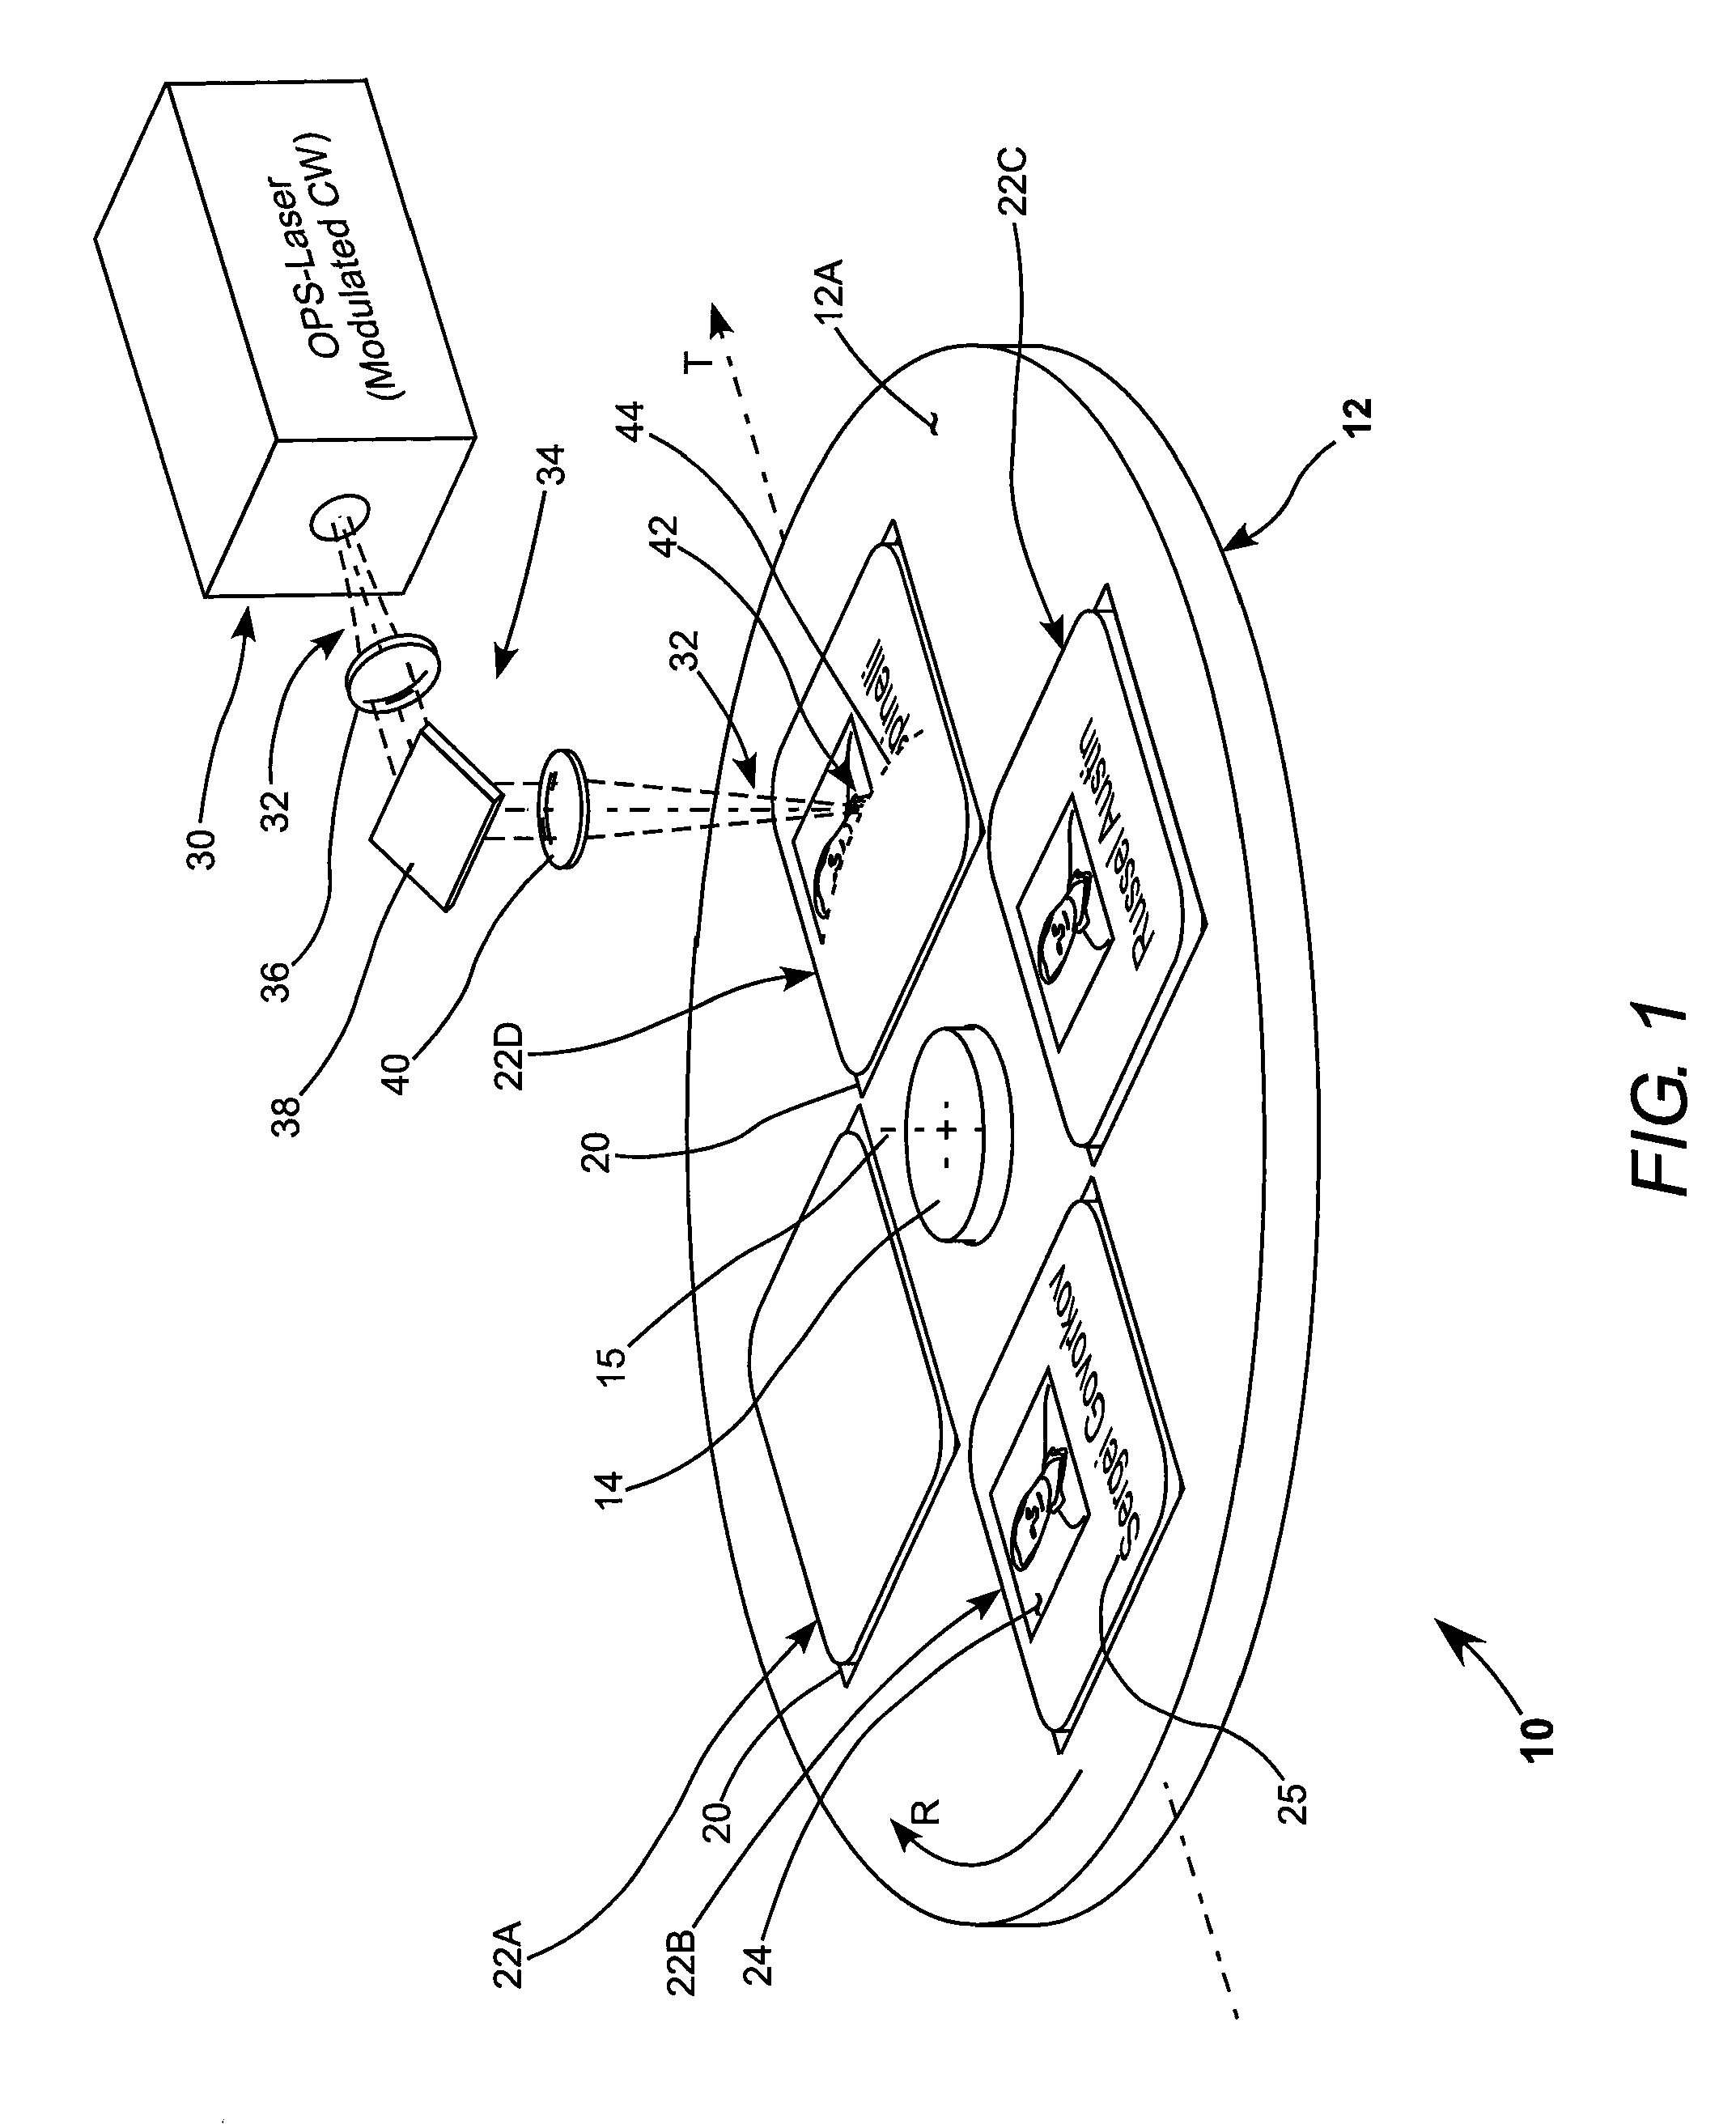 Laser engraving apparatus